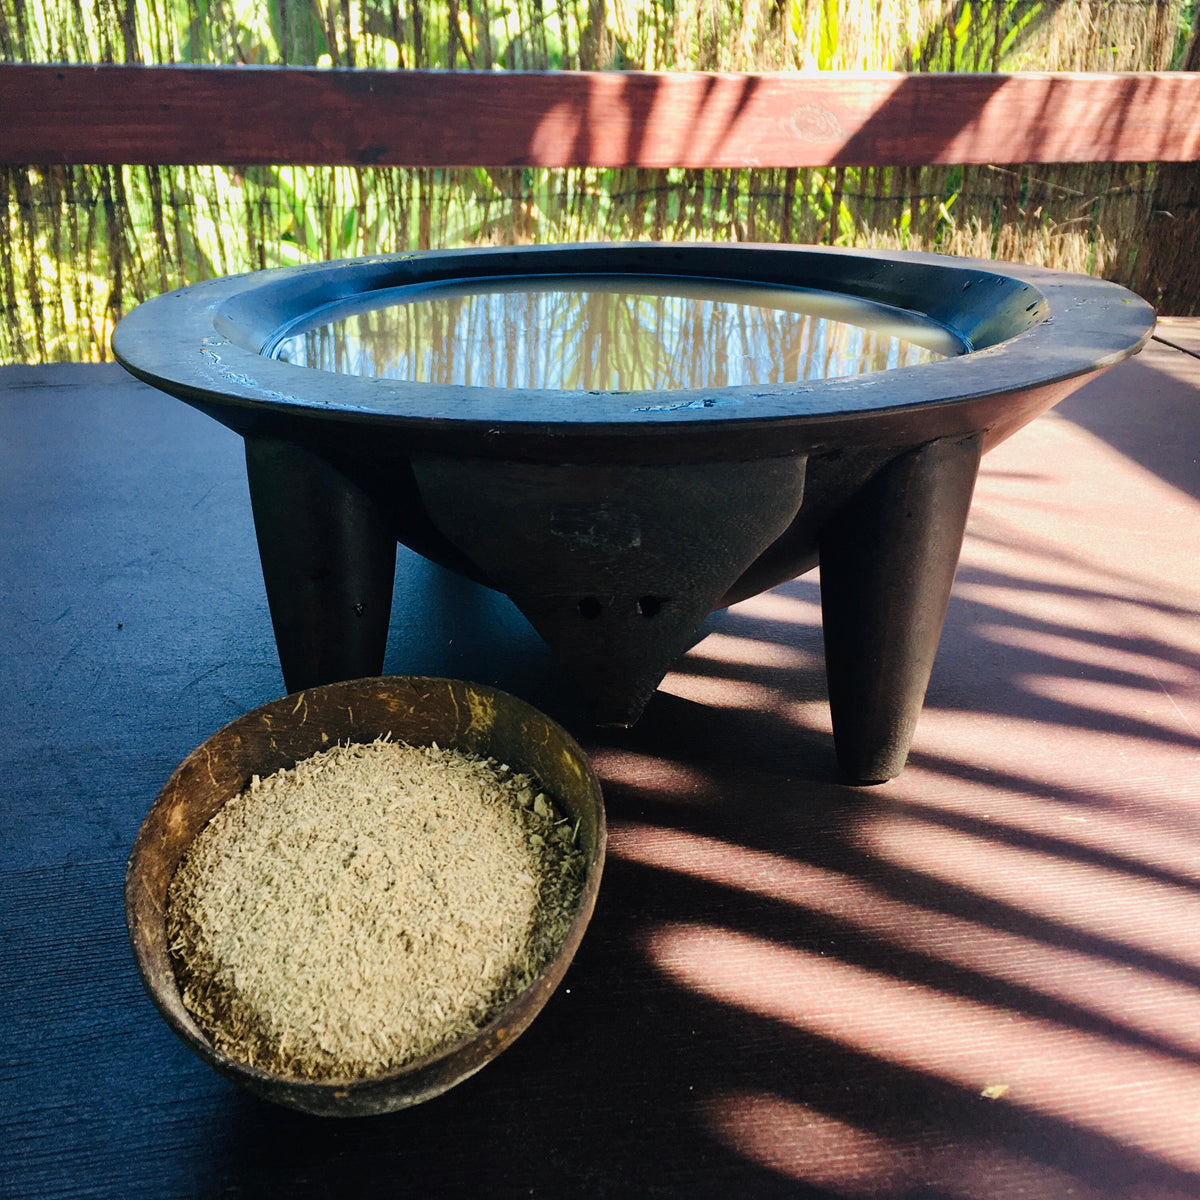 KAVA - Vanuatu Kava - Namele - Noble Kava Blend